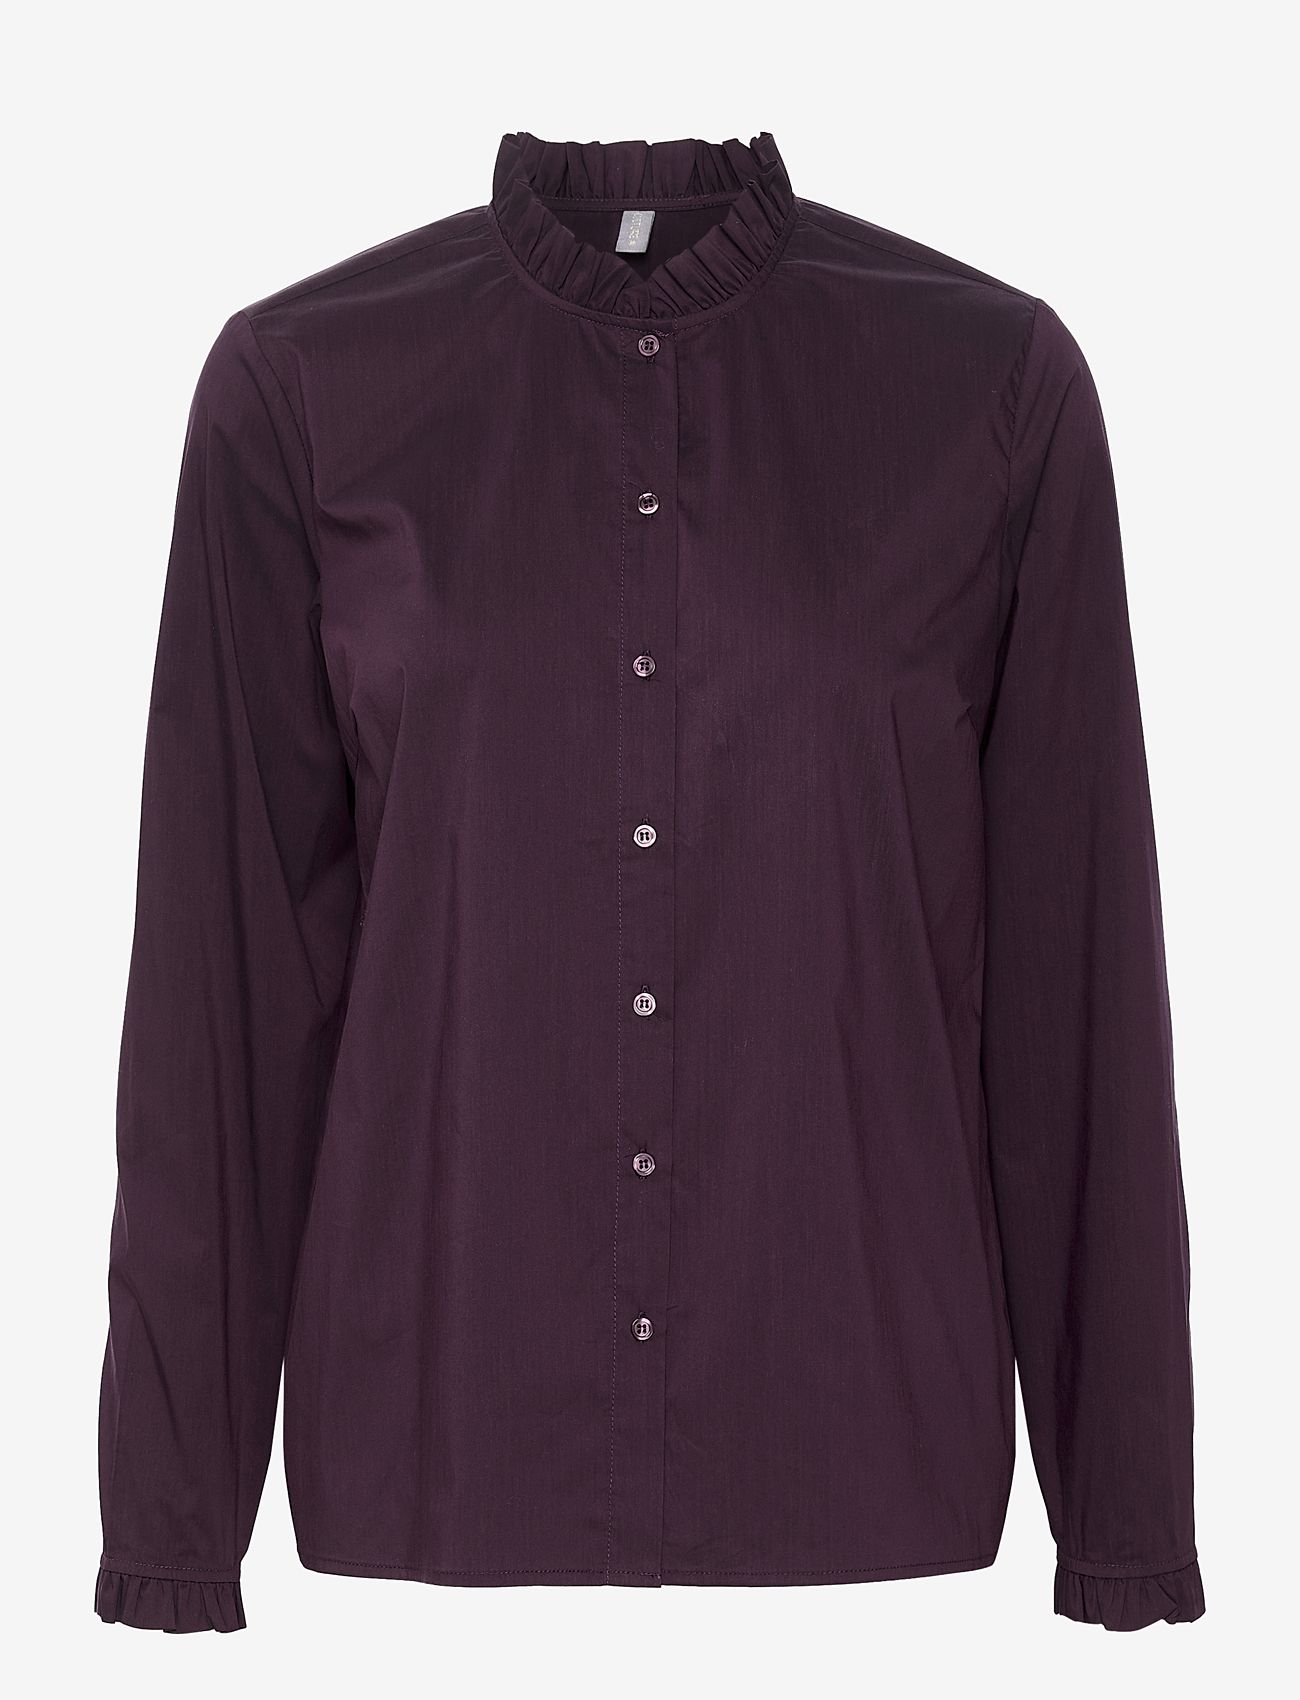 Culture - CUantoinett Button Shirt - långärmade skjortor - winetasting - 0